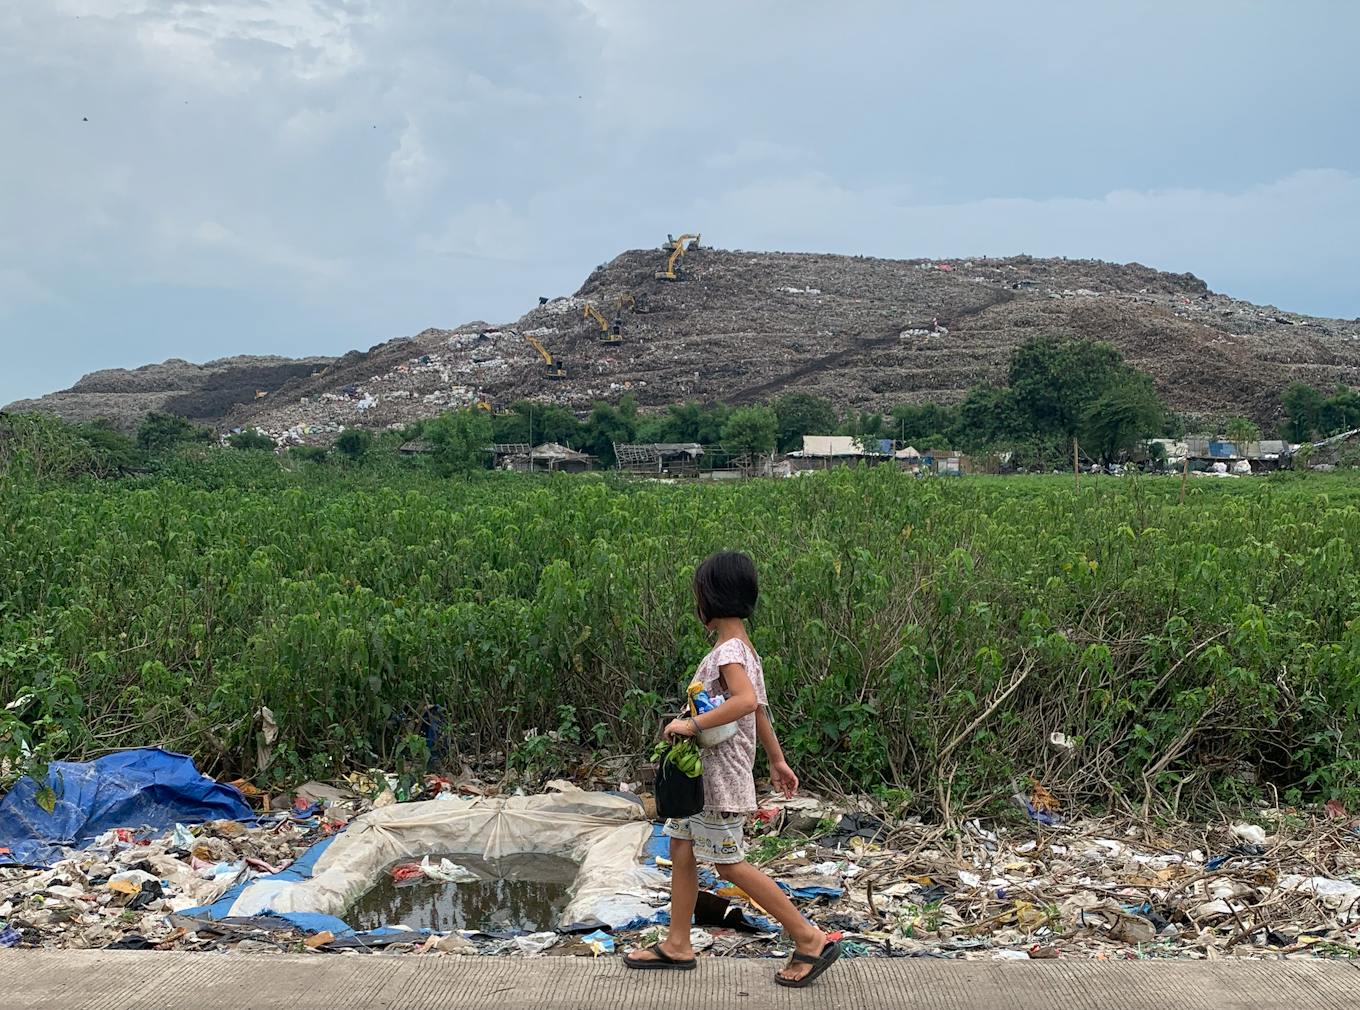 A young girl walks passed Bantar Gebang landfill